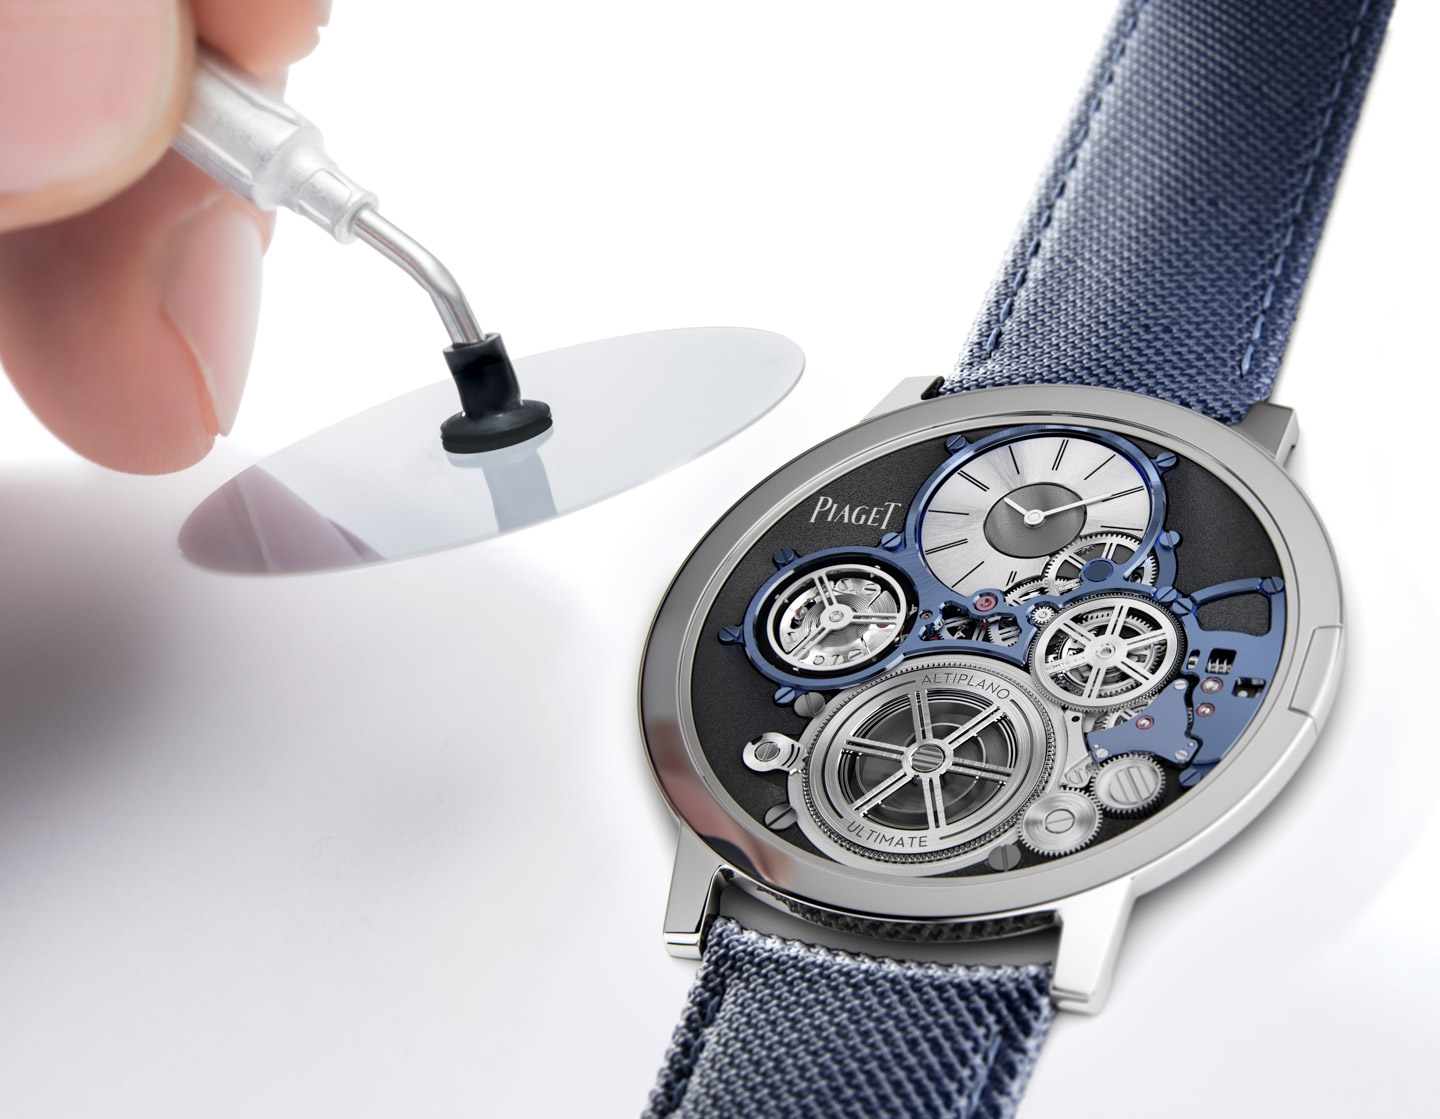 Phỏng vấn: Bí quyết để thương hiệu Piaget tạo ra được những chiếc đồng hồ siêu mỏng